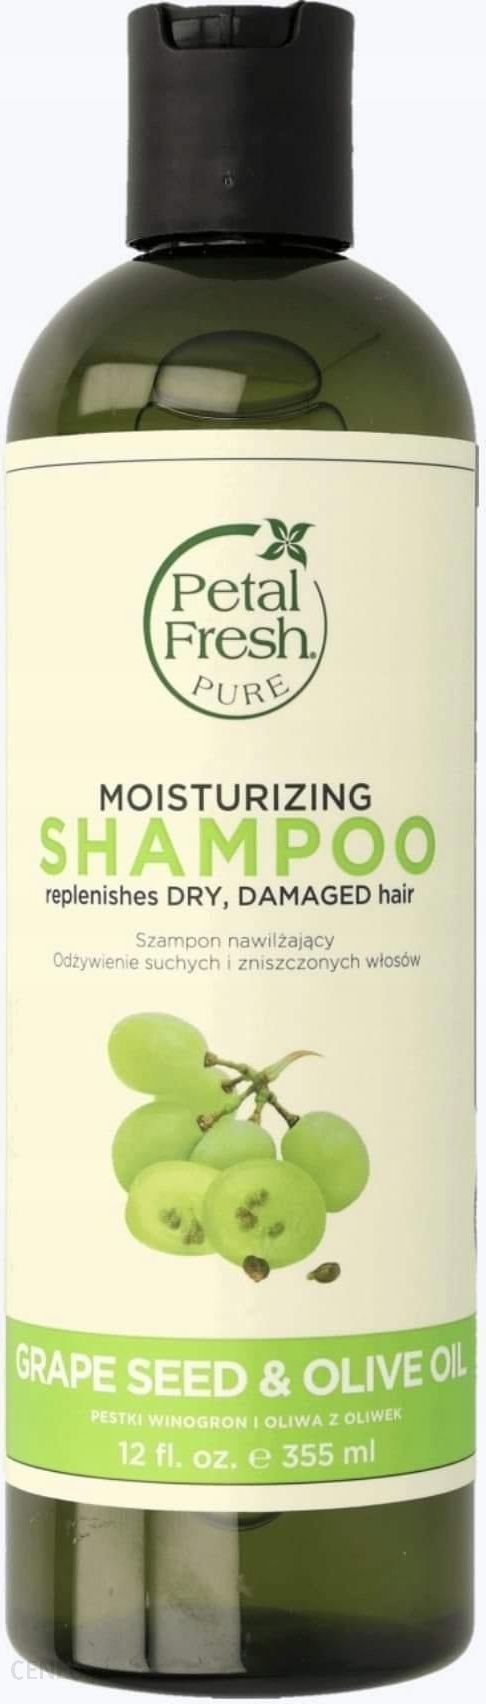 petal fresh szampon recenzja